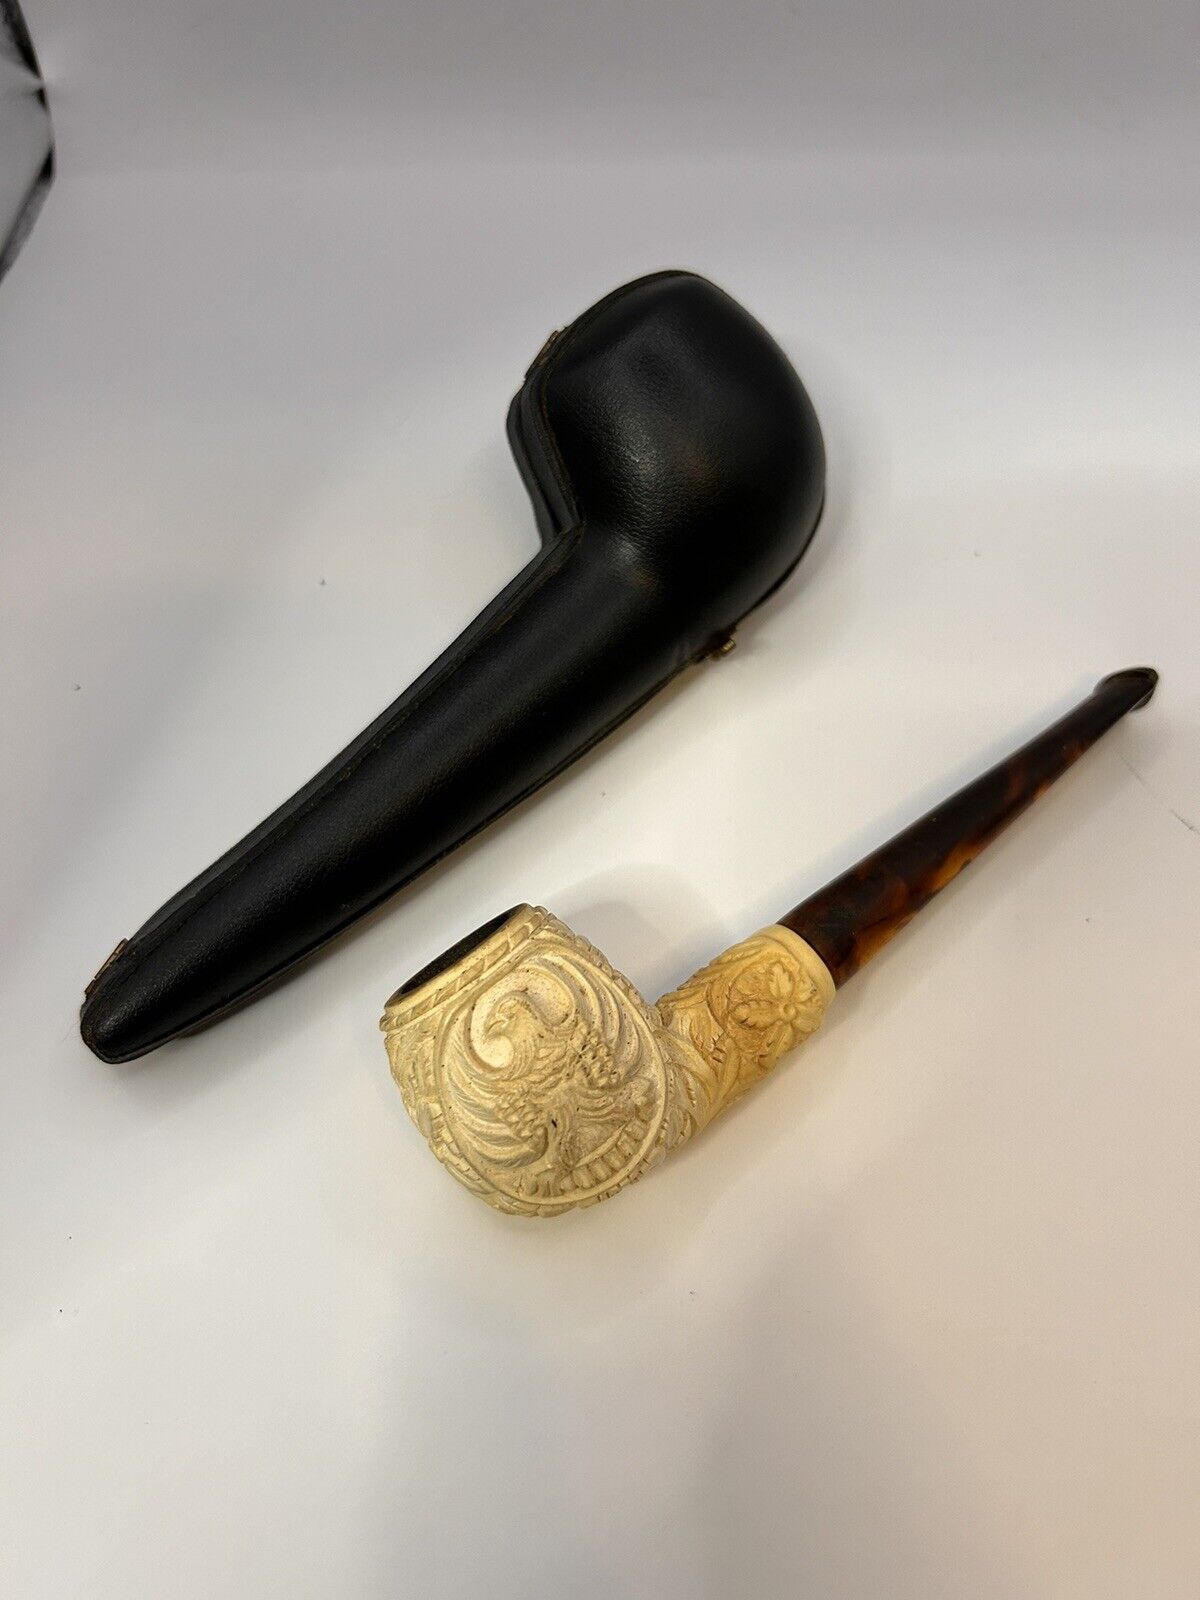 Vintage Genuine Block Meerschaum Hand Carved Pipe Made in Turkey w/Original Case